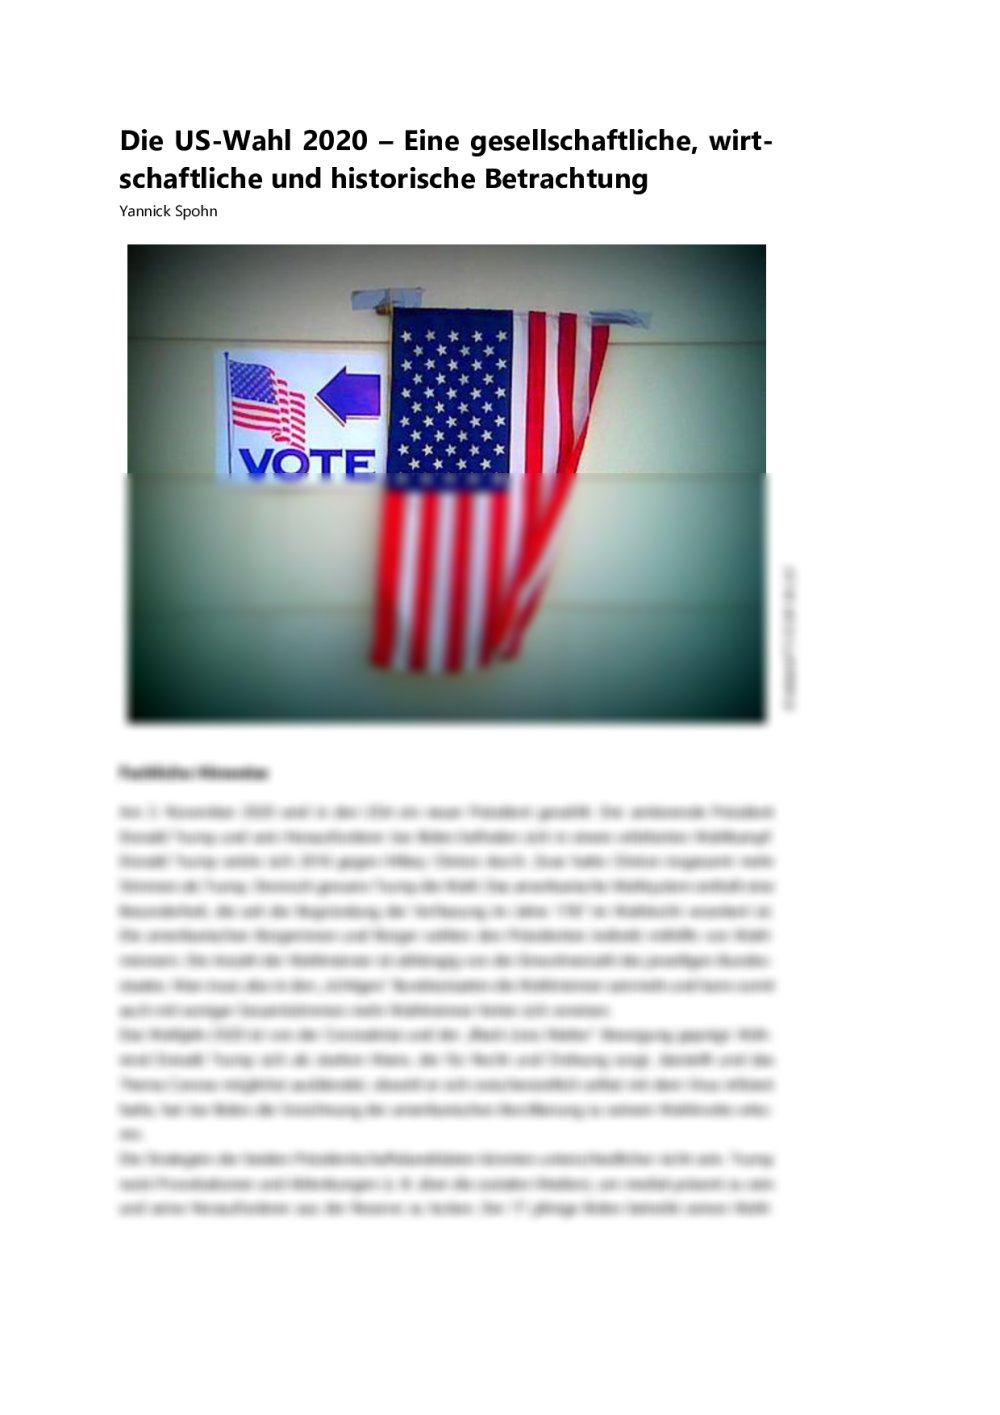 Die US-Wahl 2020 gesellschaftlich, wirtschaftlich und historisch betrachten - Seite 1